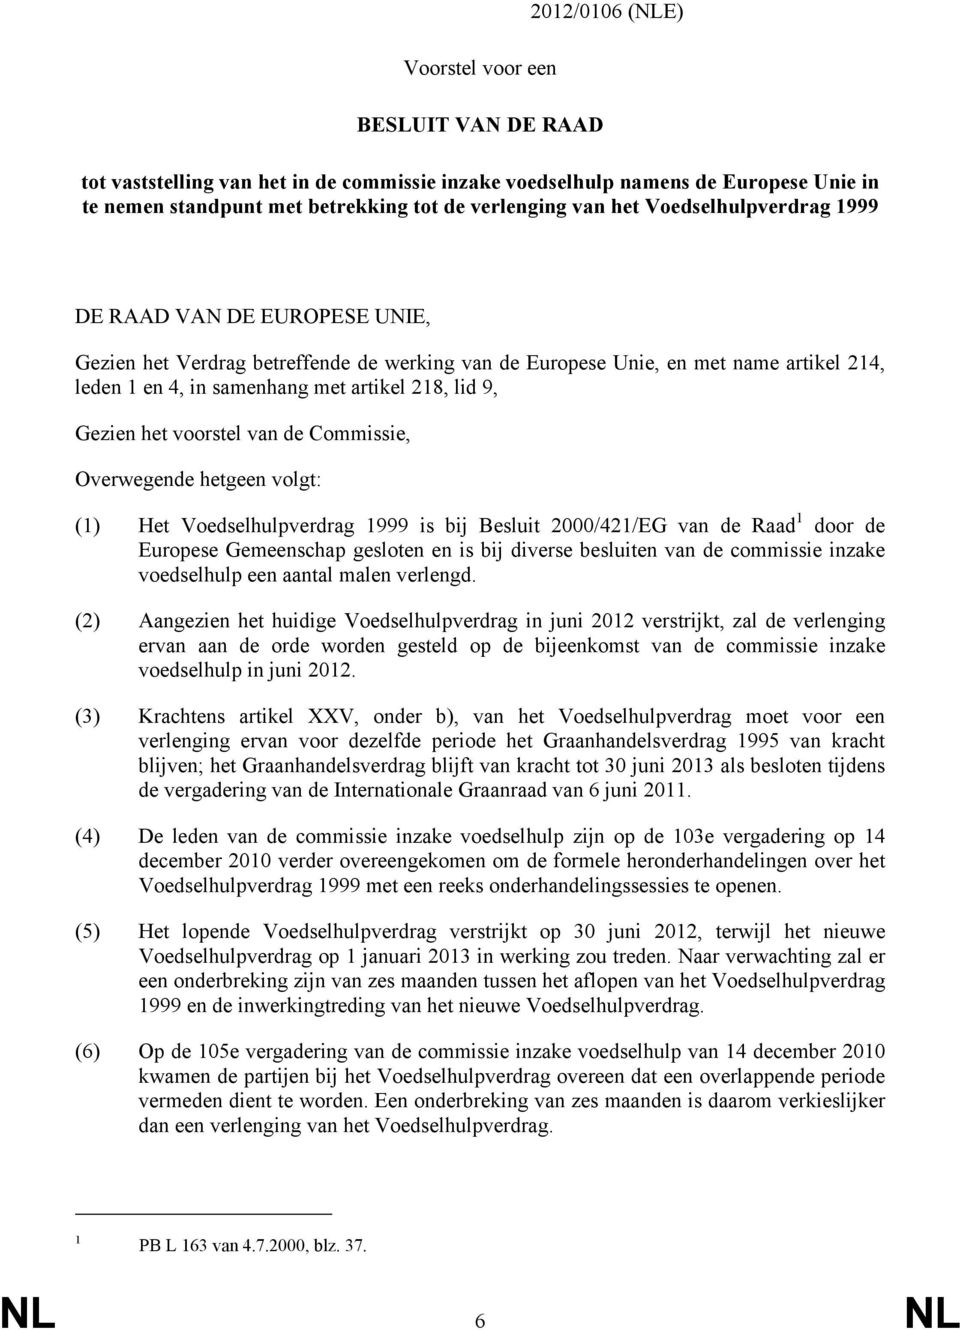 Gezien het voorstel van de Commissie, Overwegende hetgeen volgt: (1) Het Voedselhulpverdrag 1999 is bij Besluit 2000/421/EG van de Raad 1 door de Europese Gemeenschap gesloten en is bij diverse